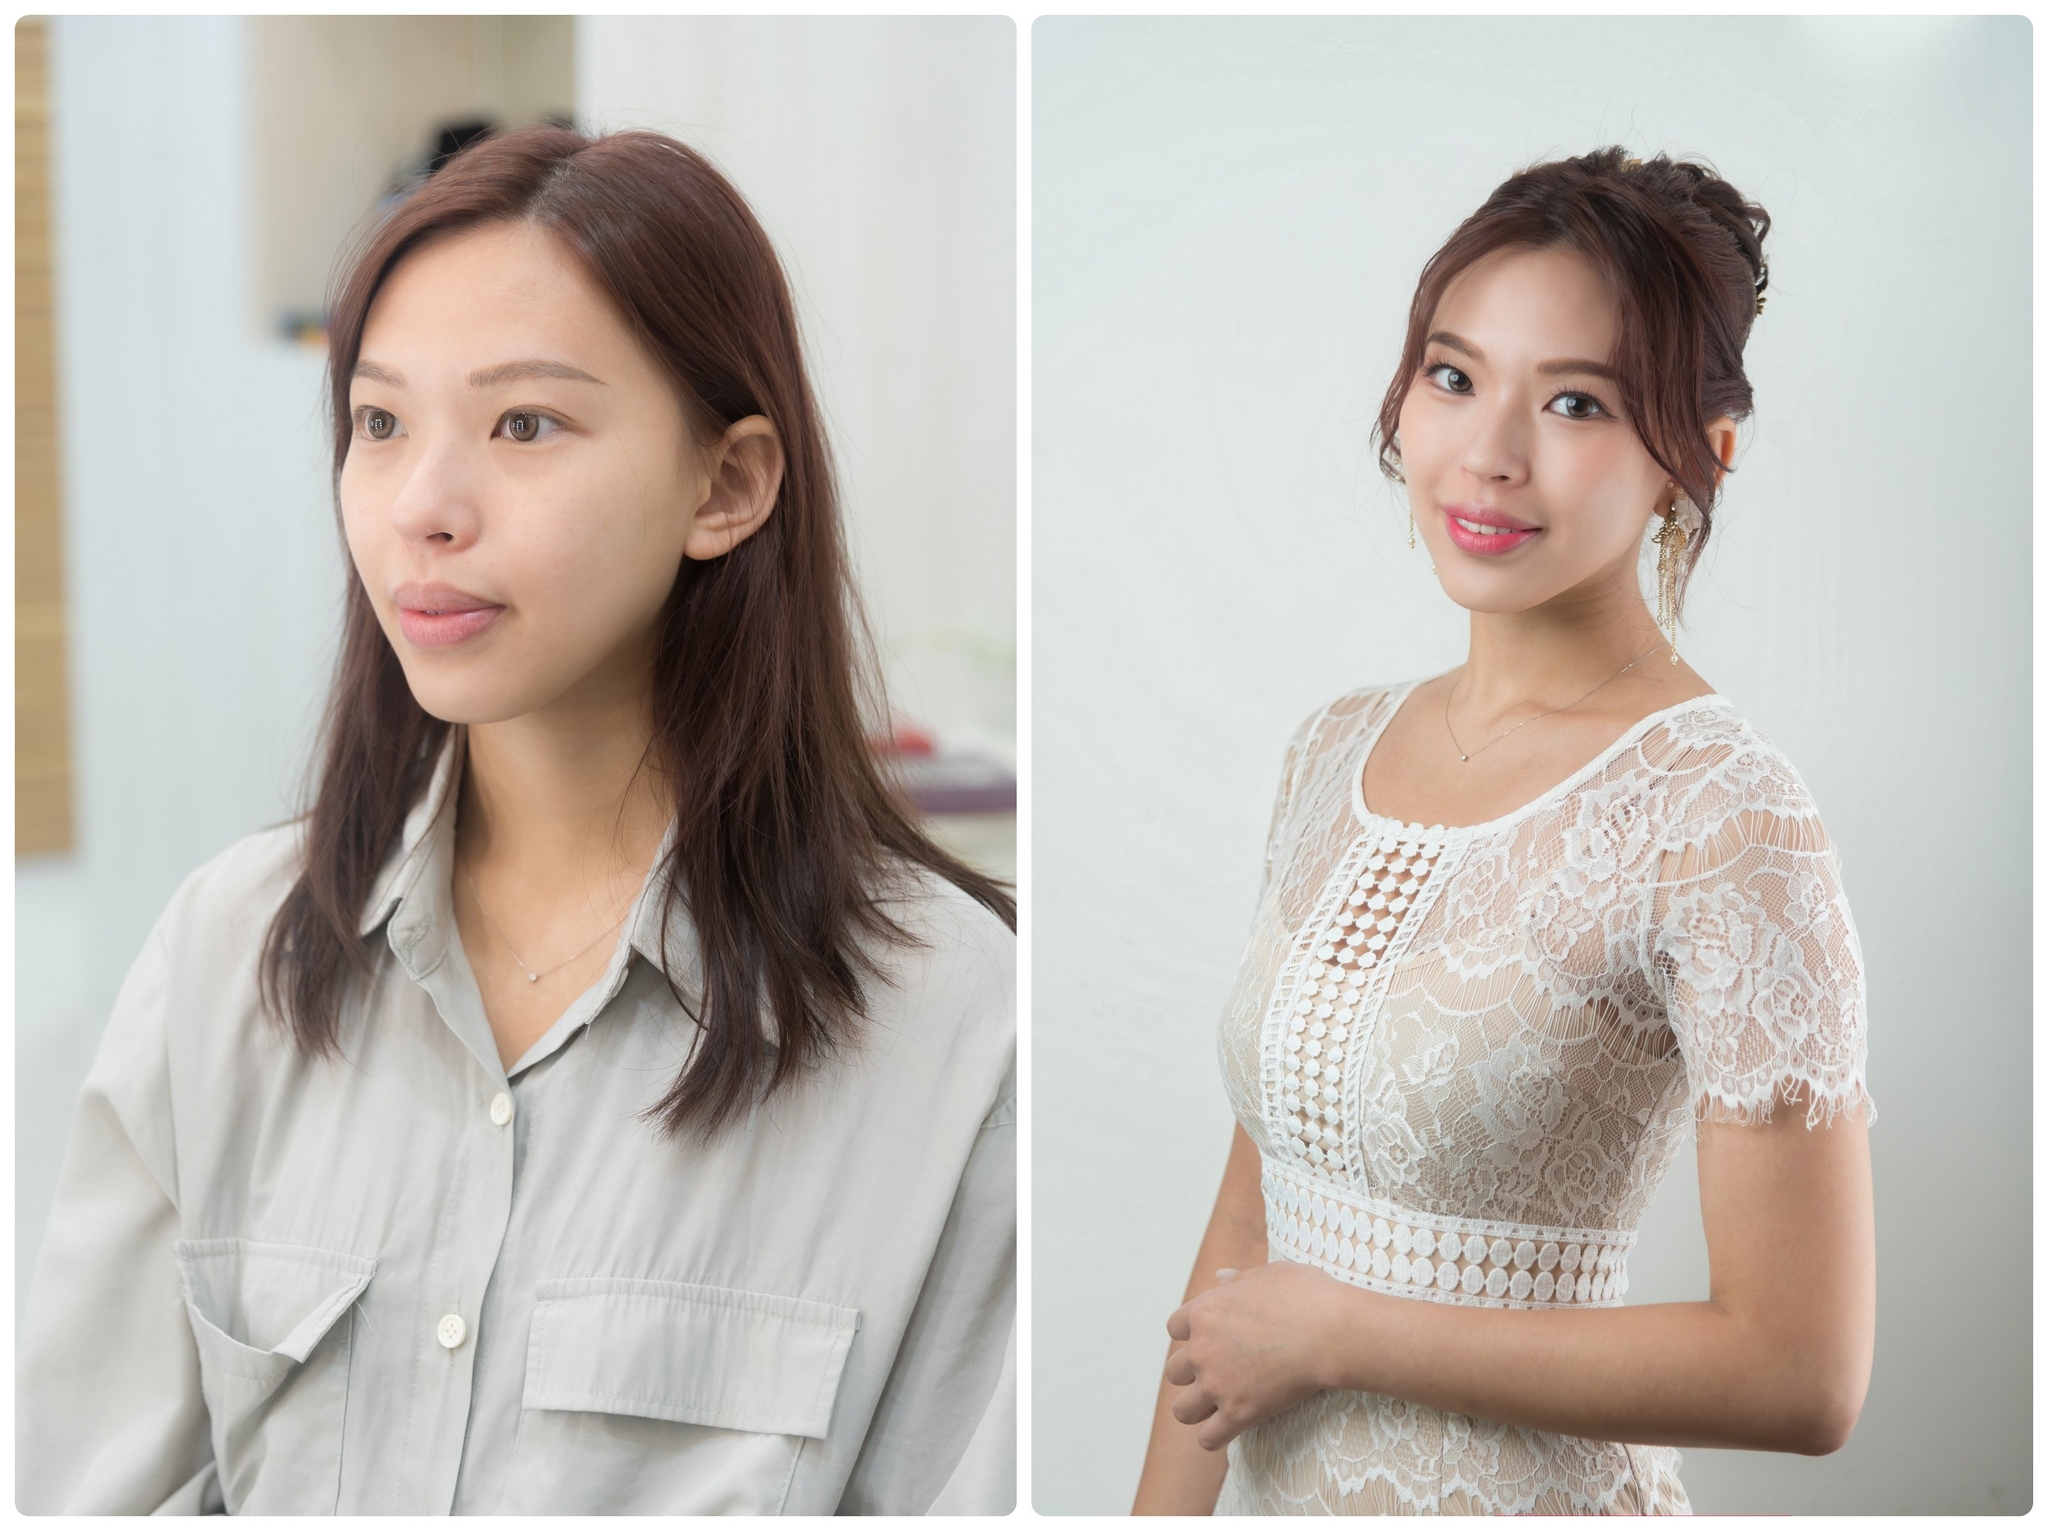 想請人幫妳化妝 台北單次化妝服務工作室推薦 看見更美的自己